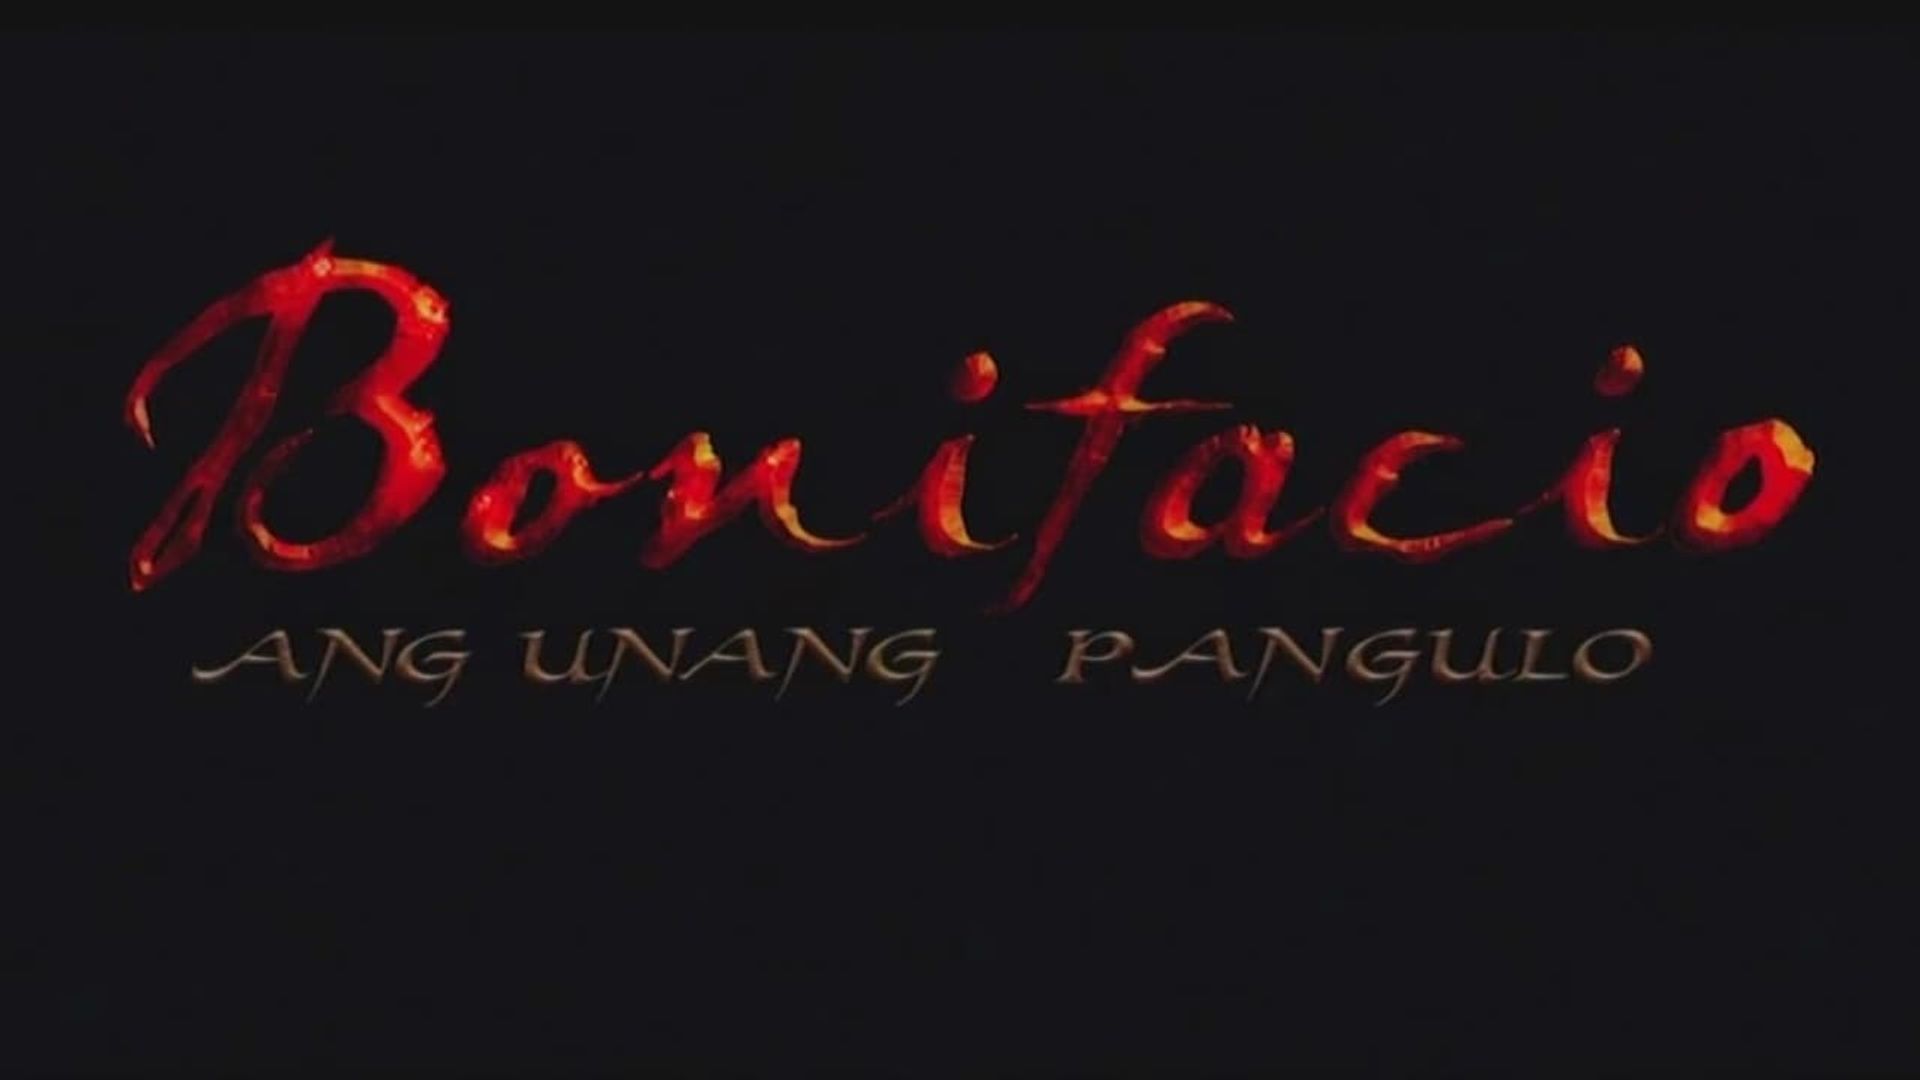 Bonifacio: Ang unang pangulo background